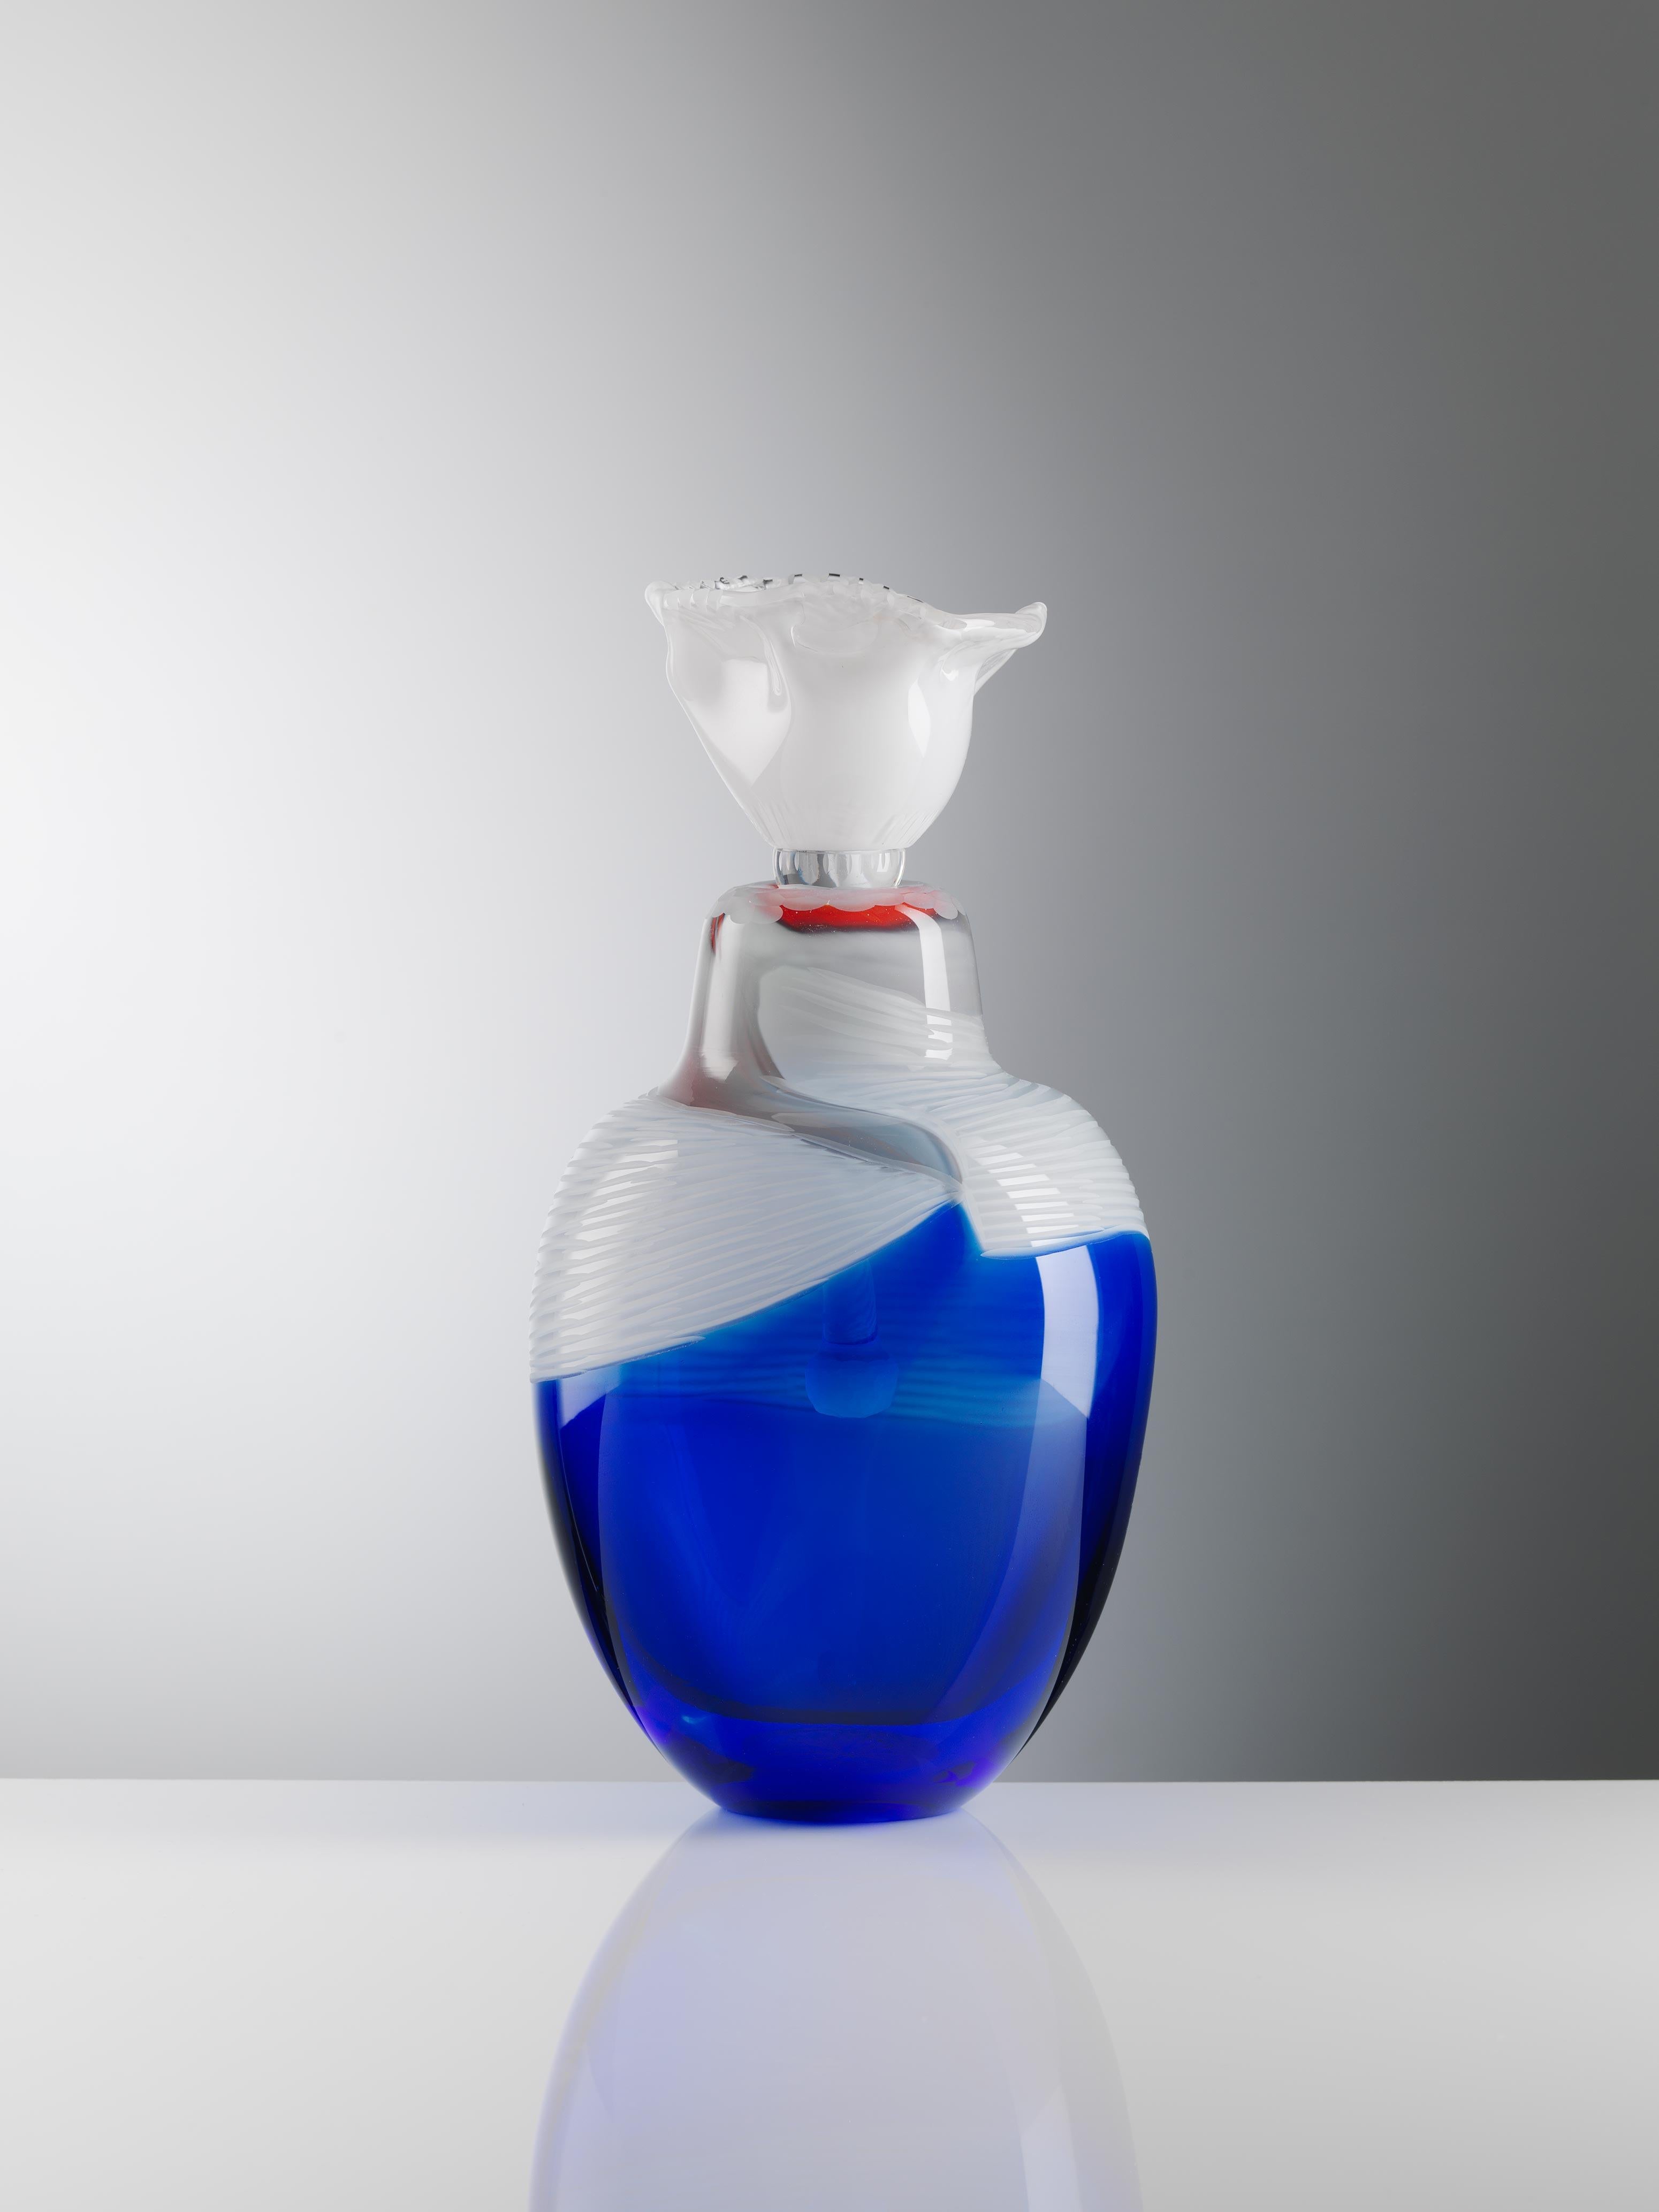 Indigo Solace4 Vase aus geblasenem Glas, handgefertigt von Juli Bolaños-Durman
Solace Collection'S 2016 - 2017
Einzigartig
Abmessungen: 12,6 x 6,3 x 6,3 Zoll
MATERIALIEN: Gefundenes und geblasenes Glas mit Schnitten

Dieses Stück besteht aus zwei